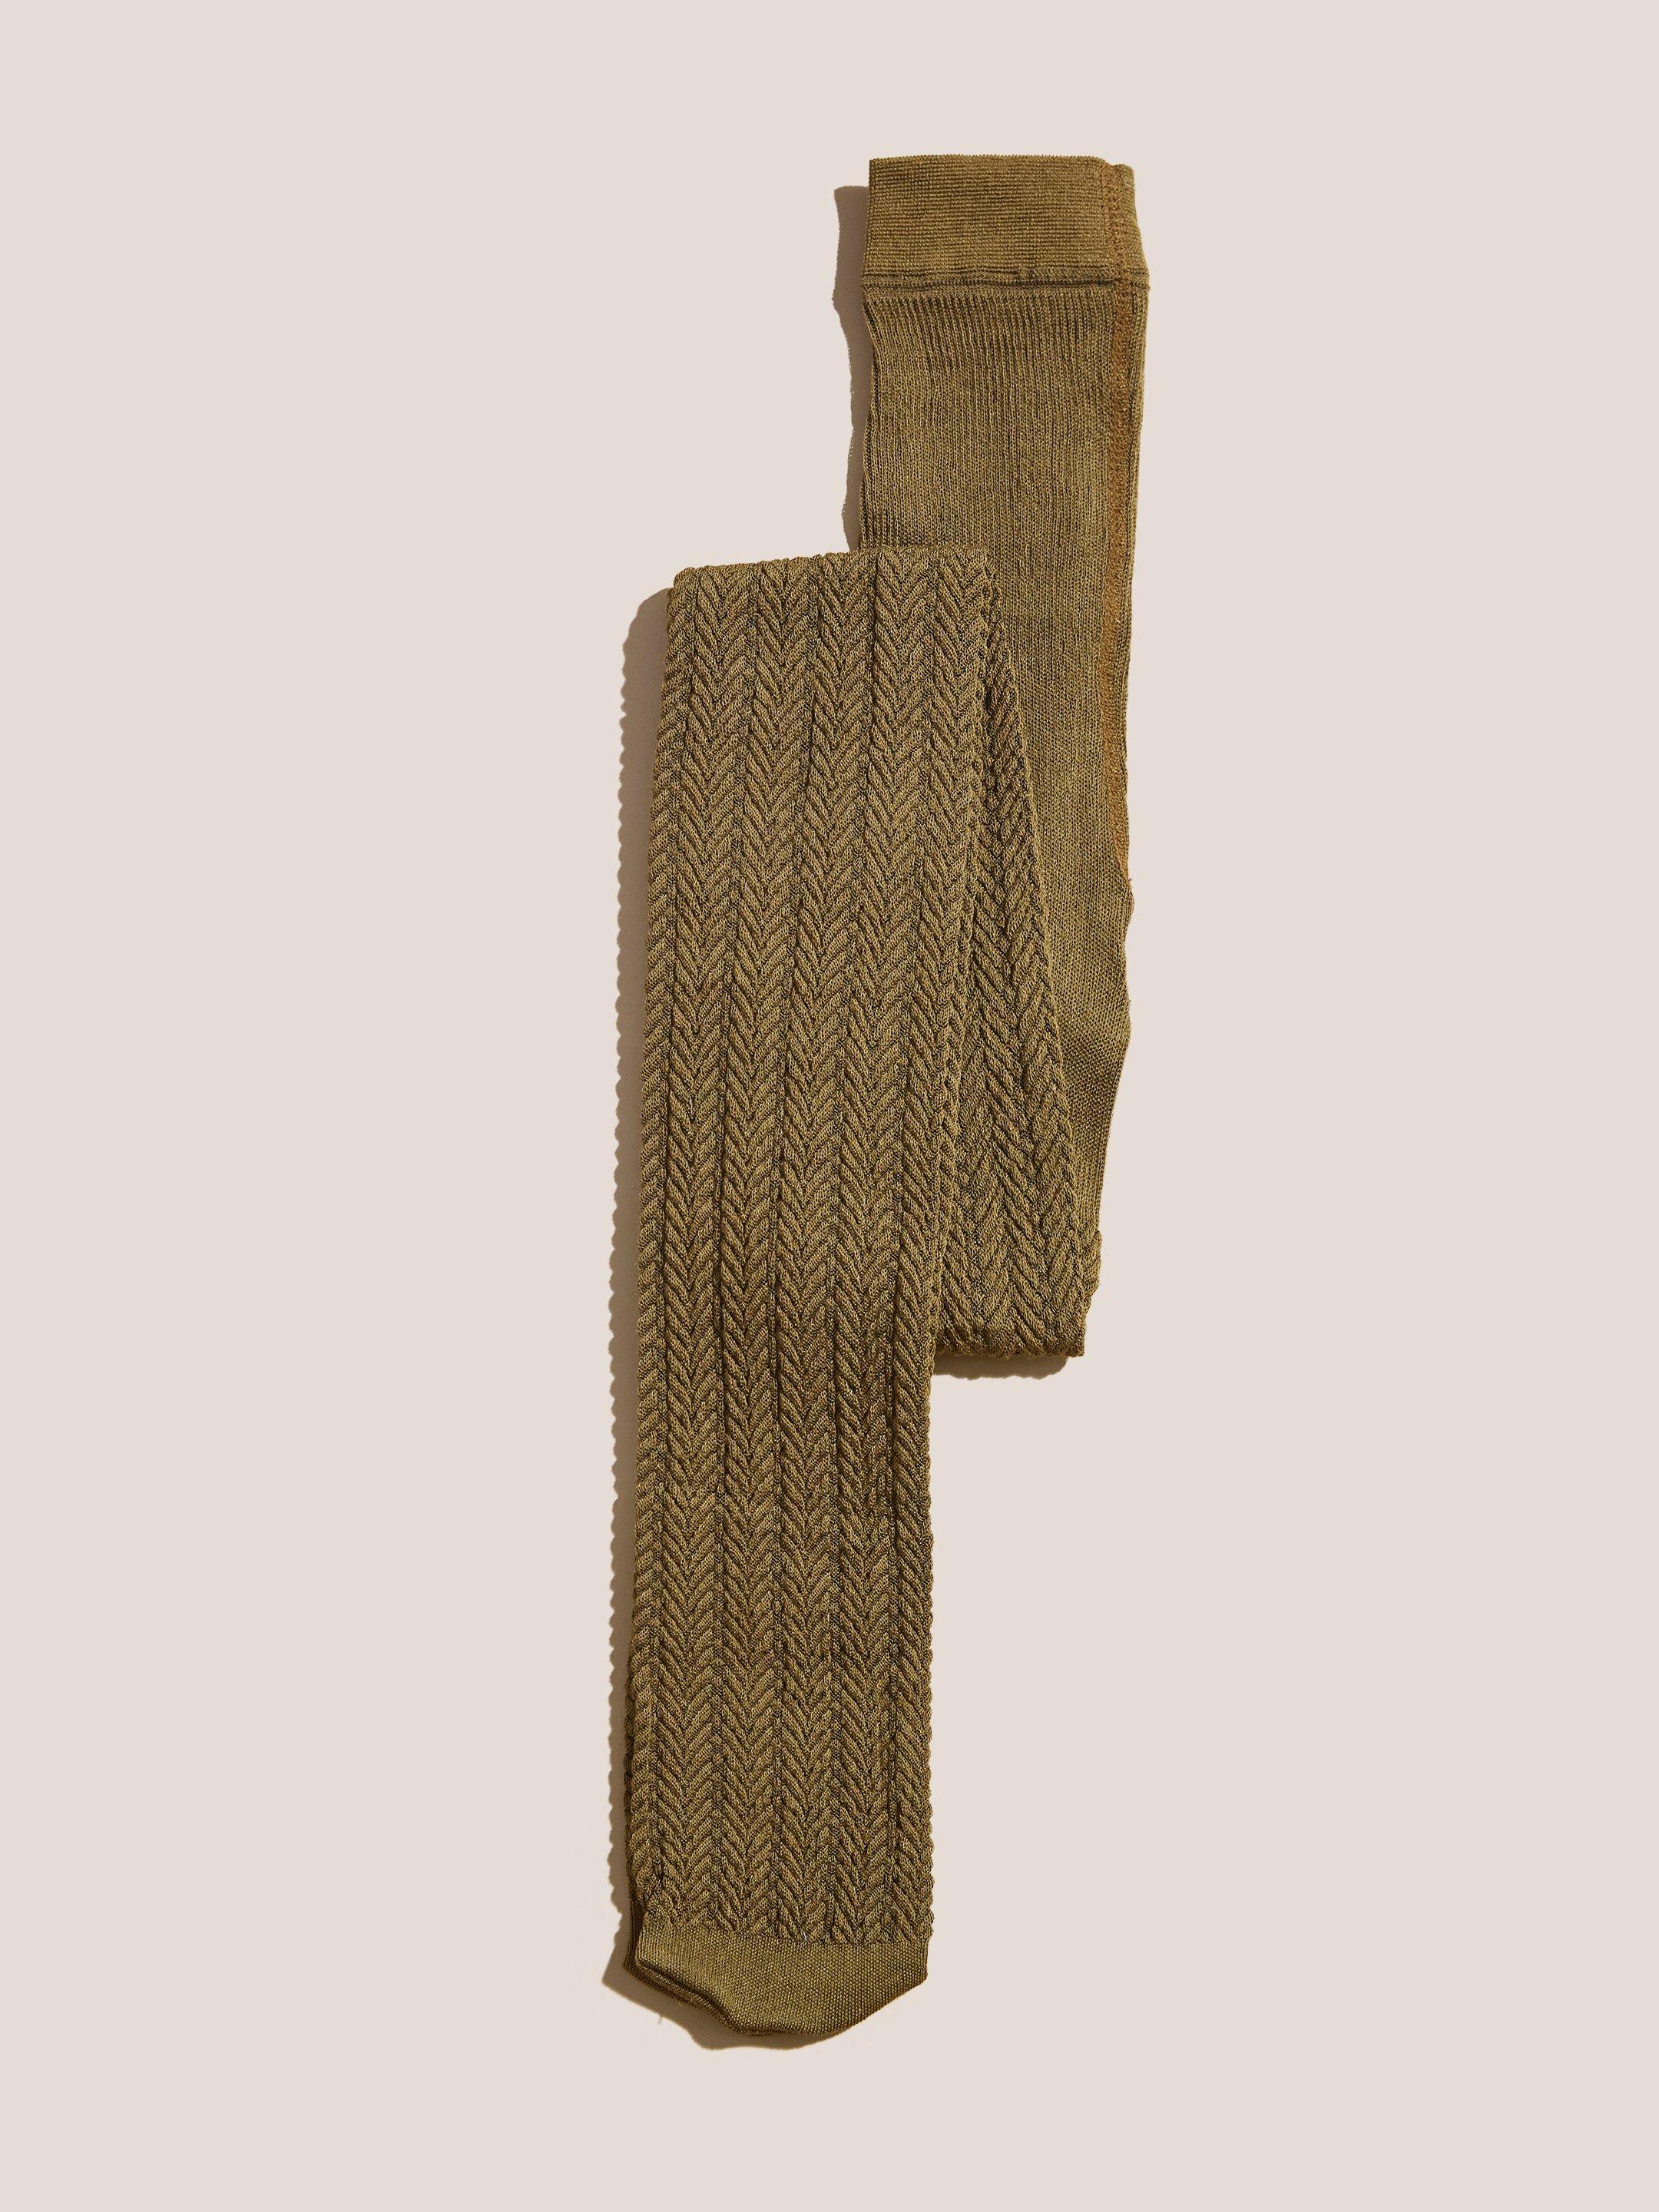 Herringbone Knit Tights in MID CHART - FLAT BACK